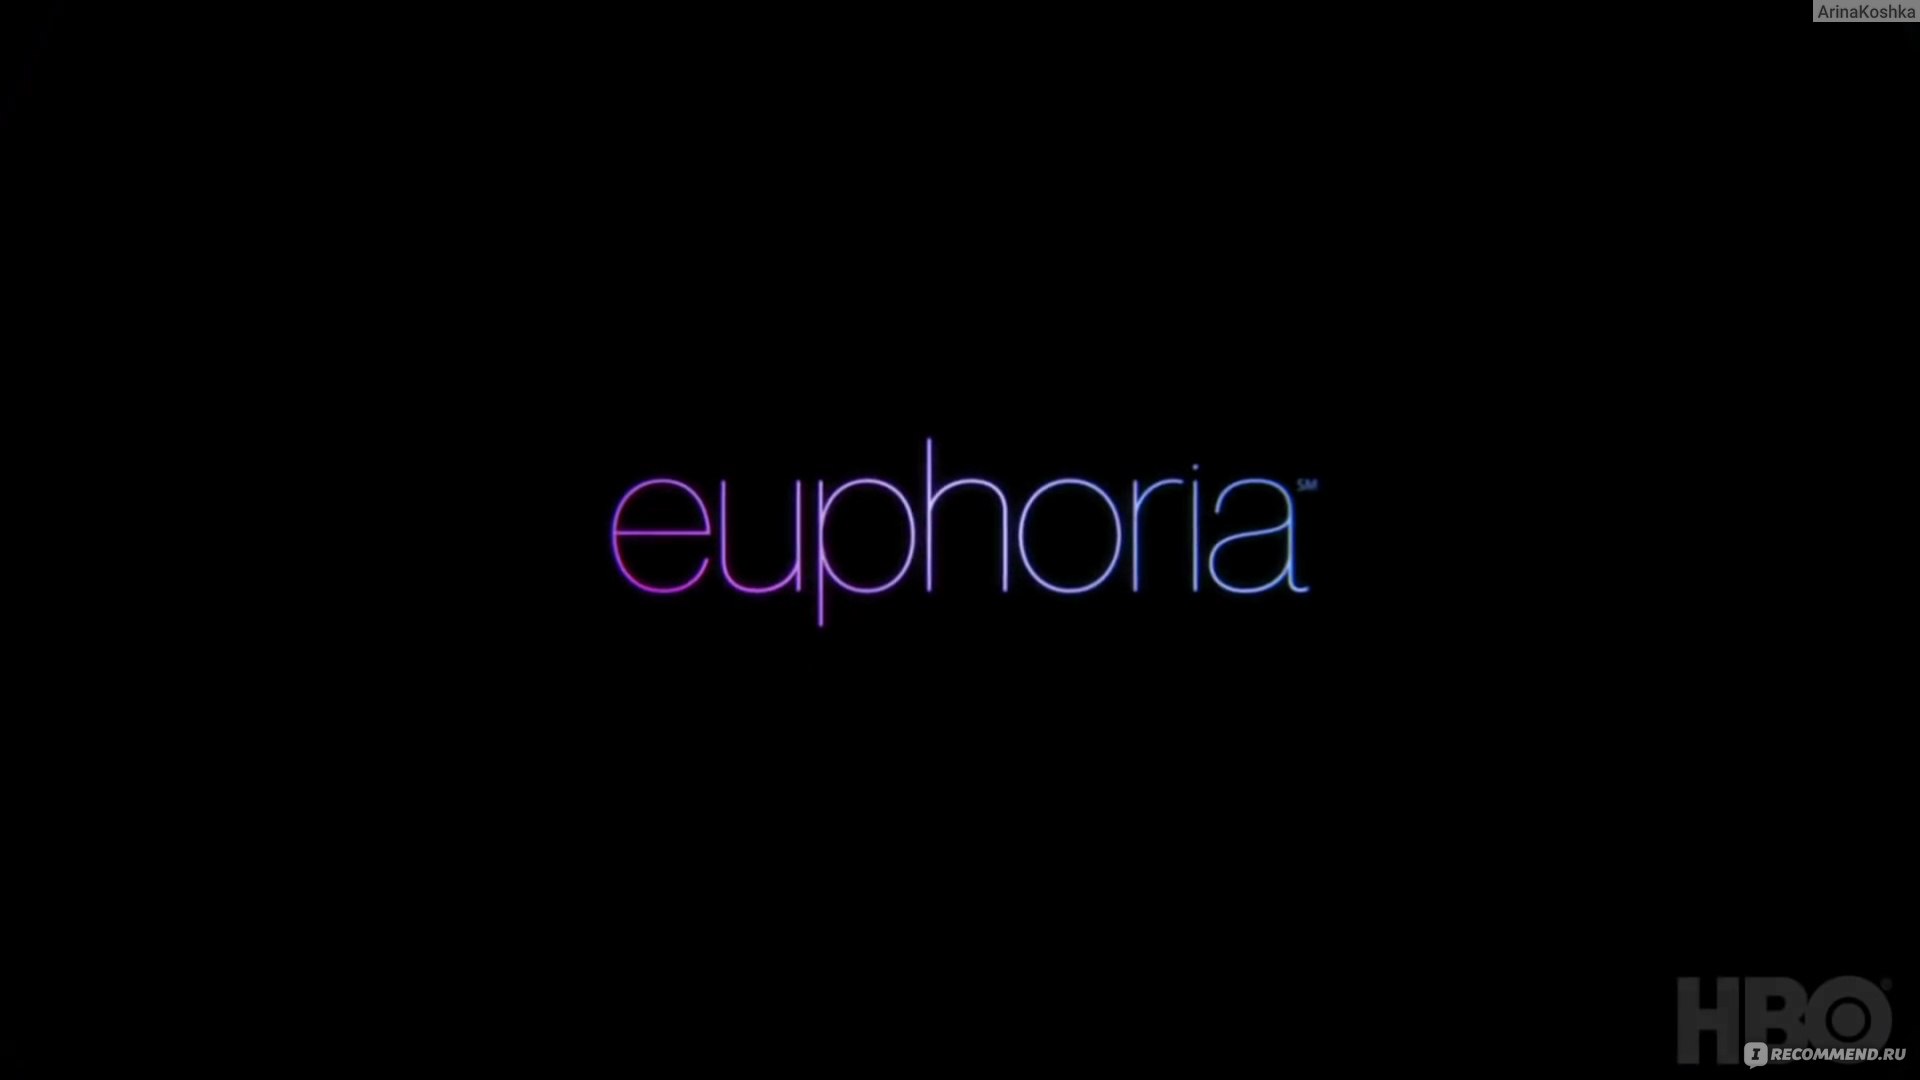 Euphoria 2Pac Song